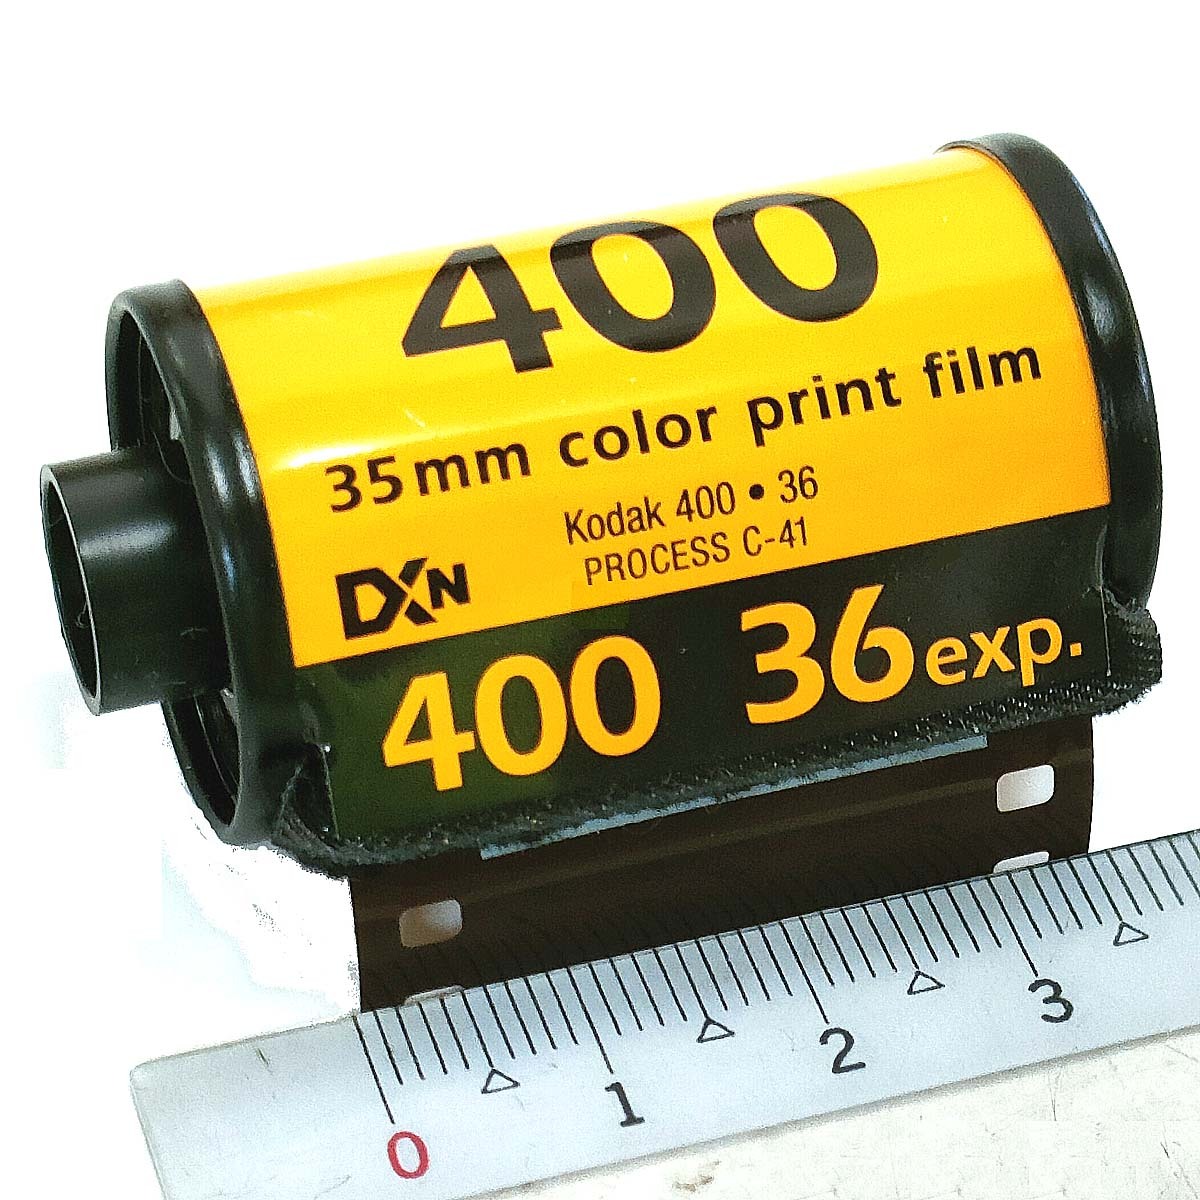 ULTRA MAX 400-36 листов .[ 1 шт. ]Kodak цвет nega плёнка ISO чувствительность 400 135/35mm[ быстрое решение ]ko Duck CAT603-4060*0086806034067 новый товар 